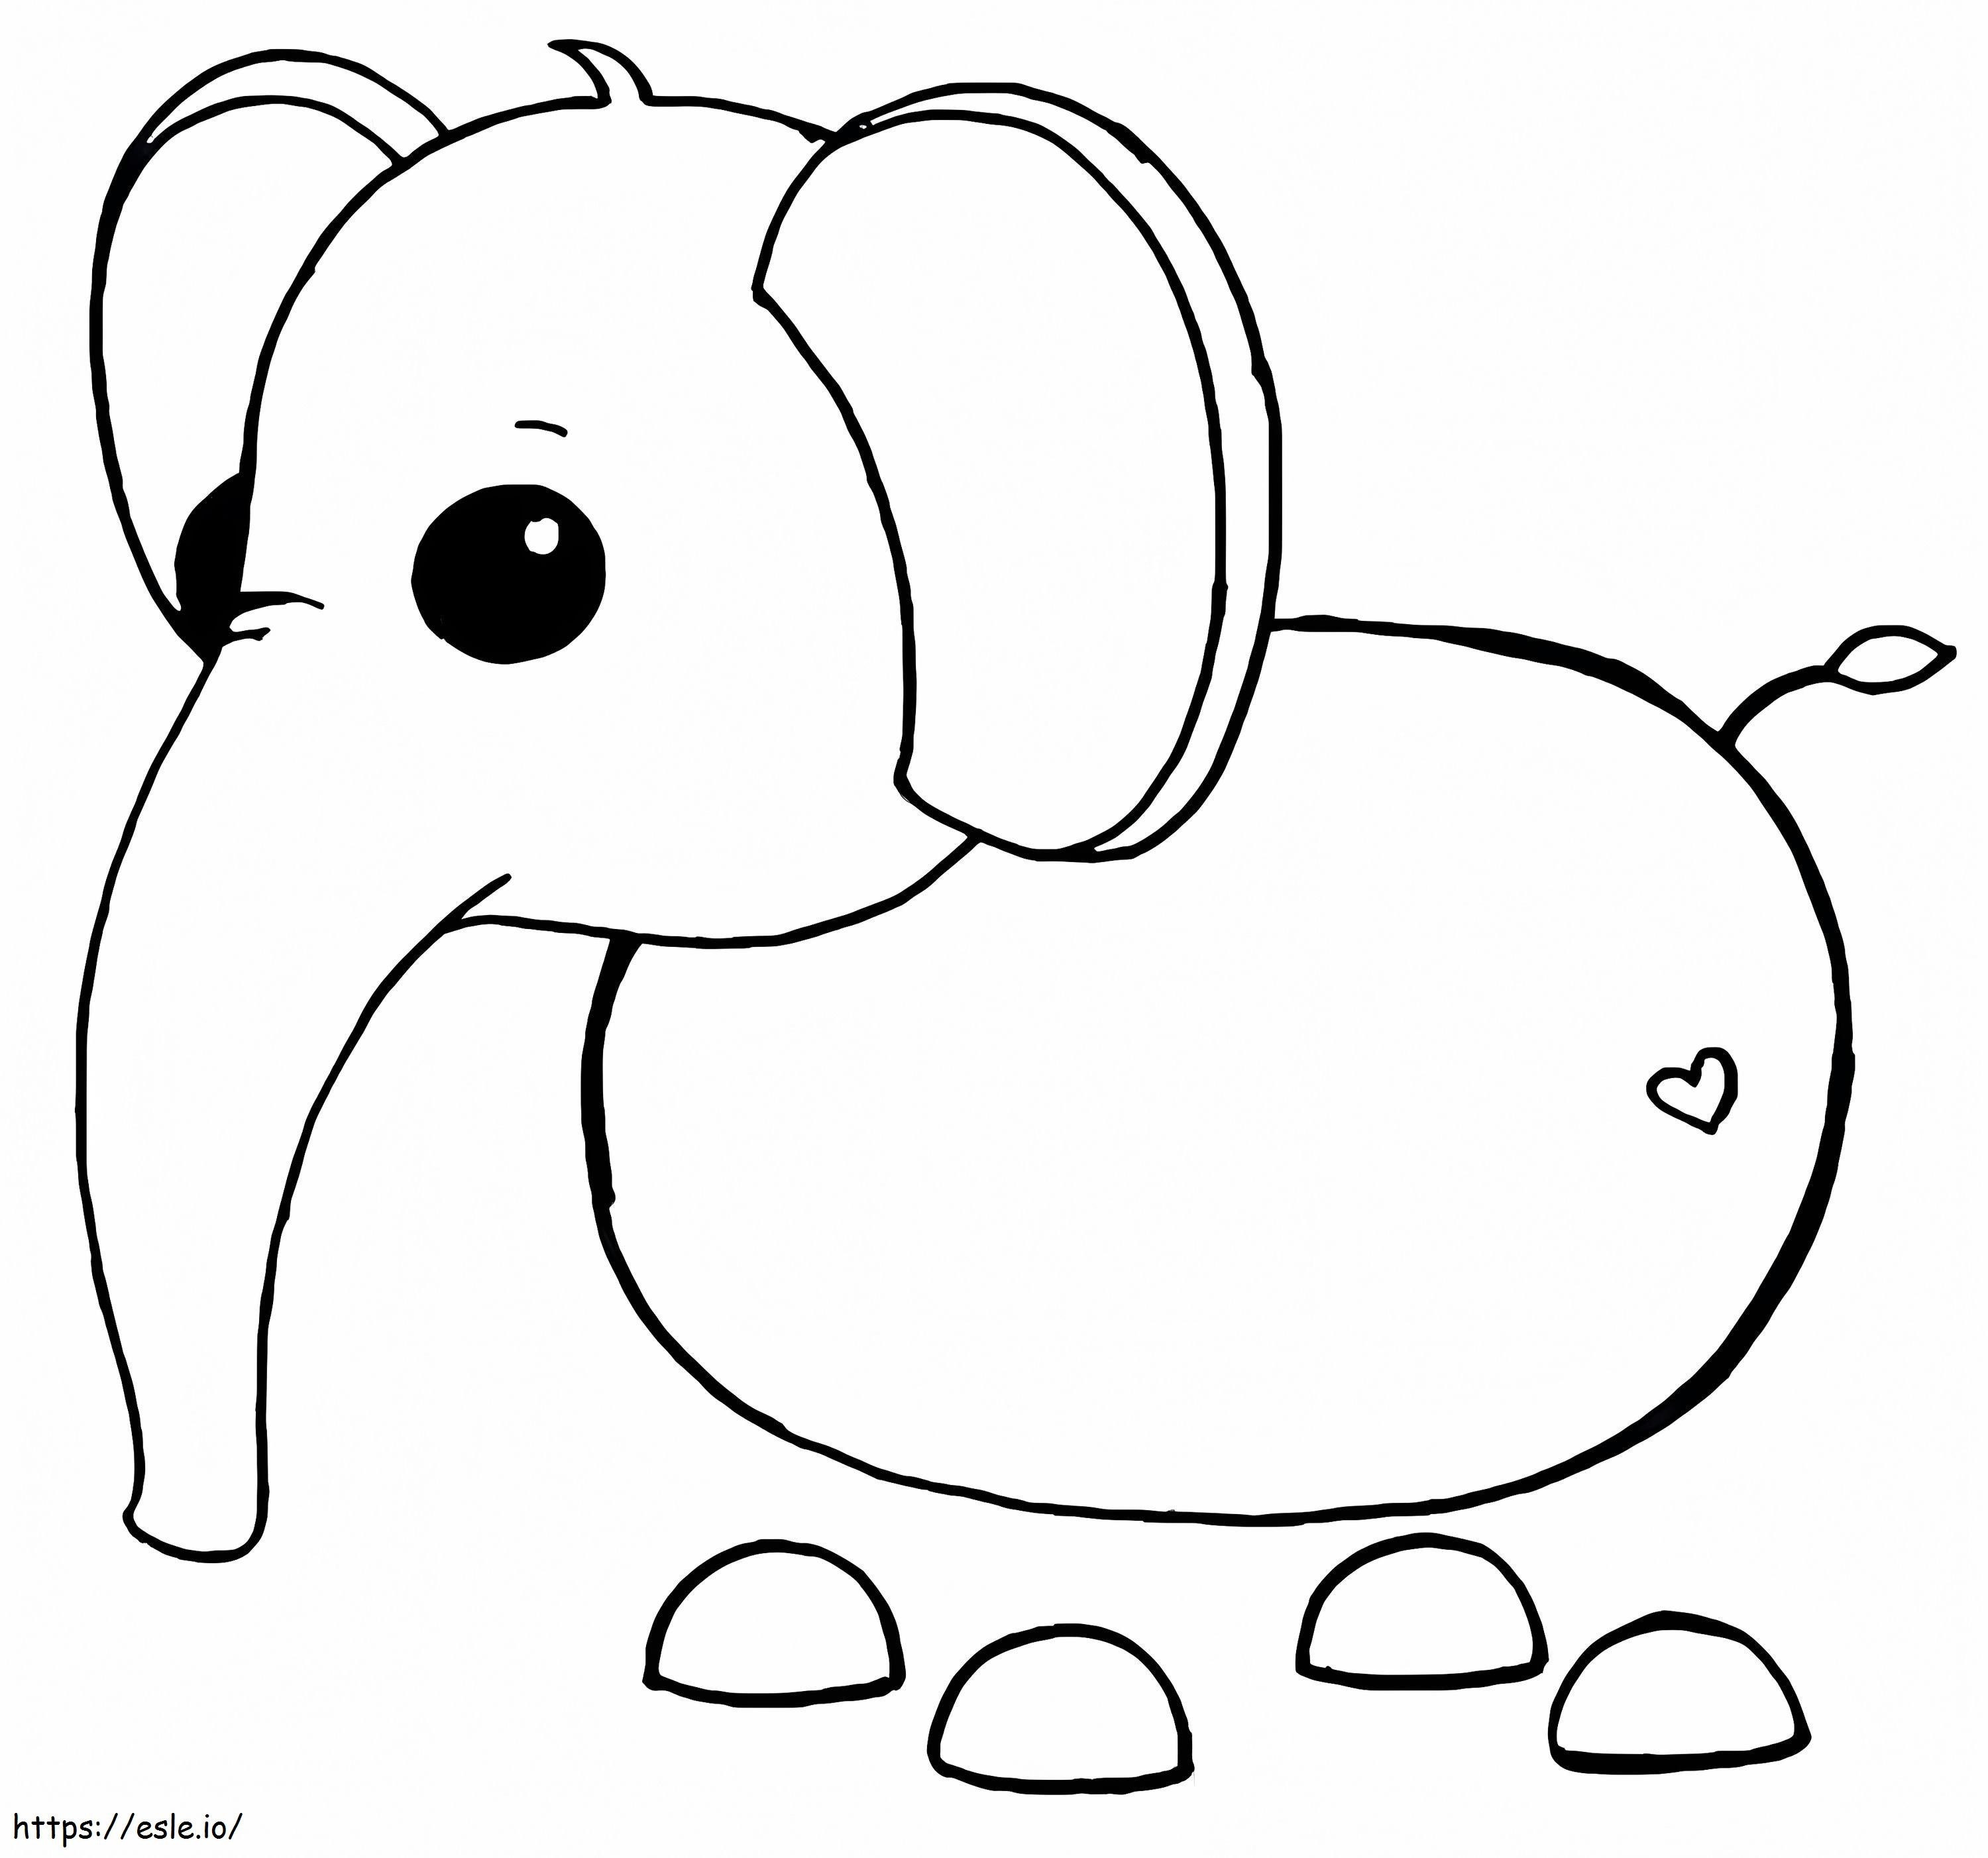 Słoń Adoptuj mnie kolorowanka